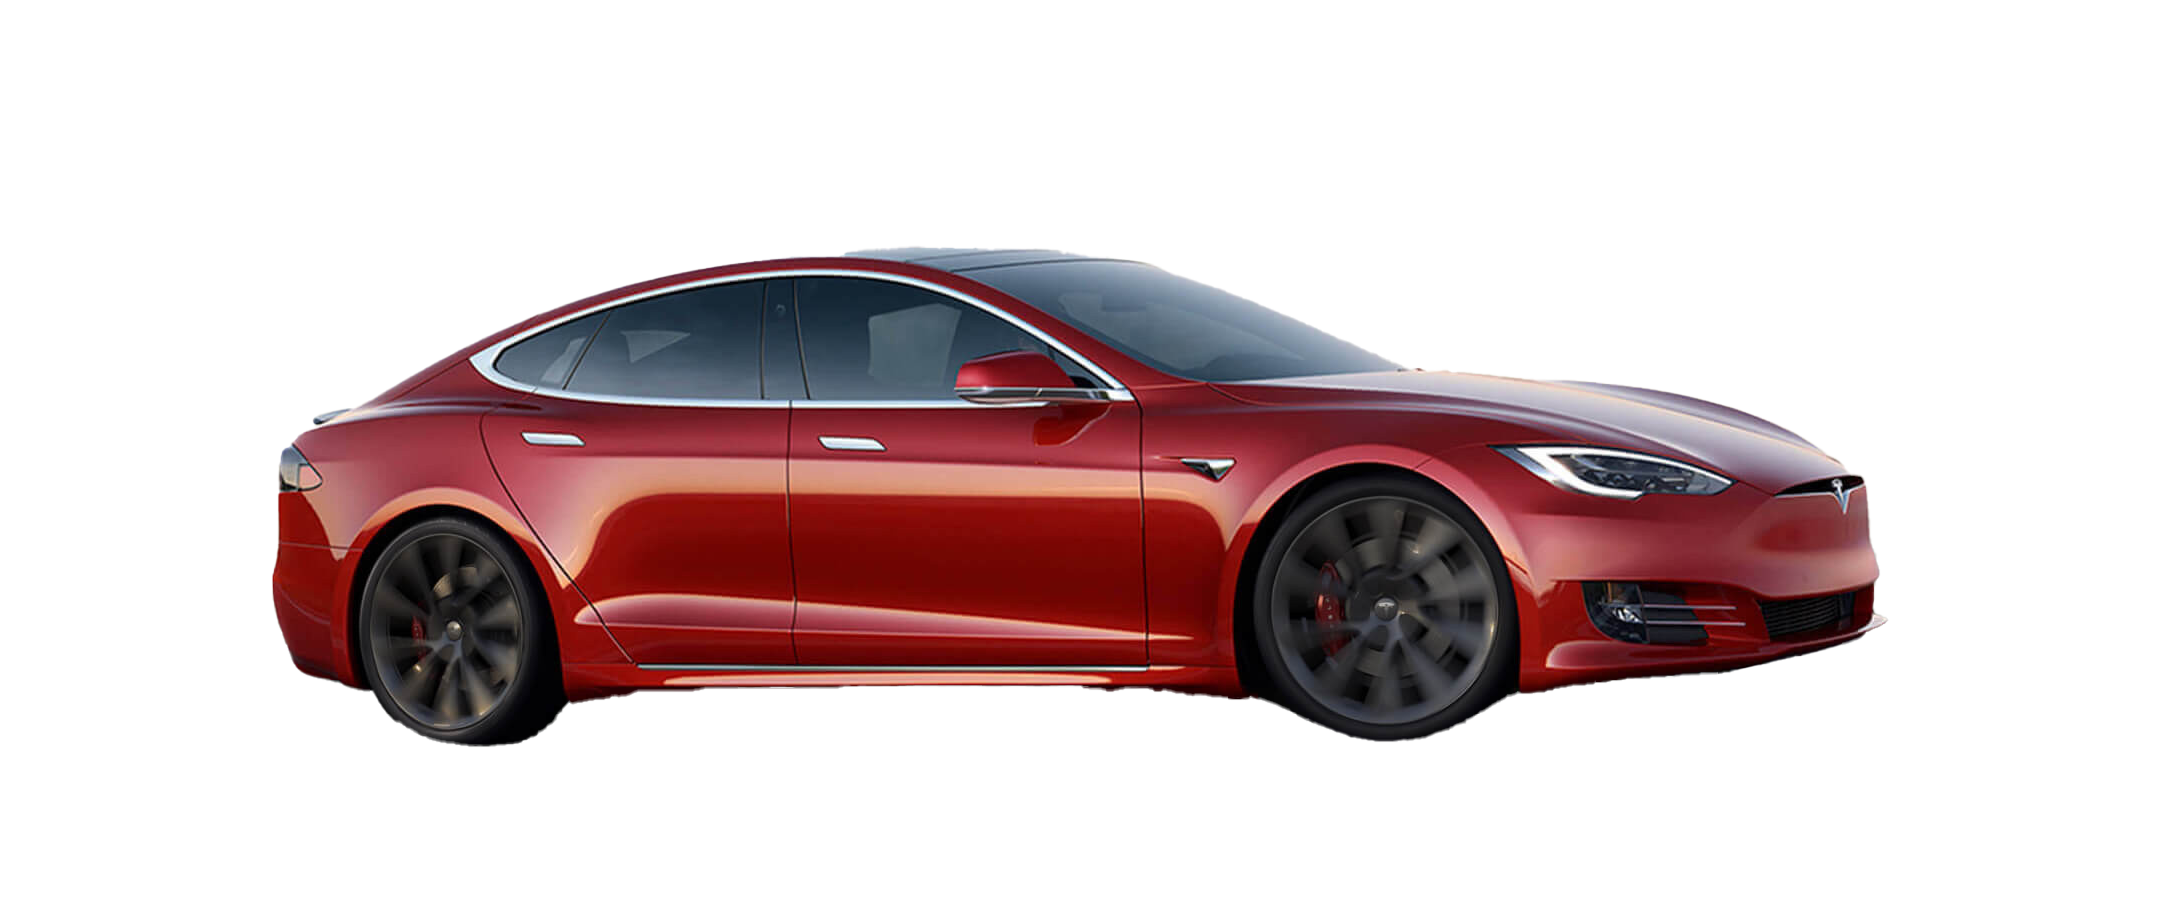 Immagine Trasparente PNG del modello di Tesla